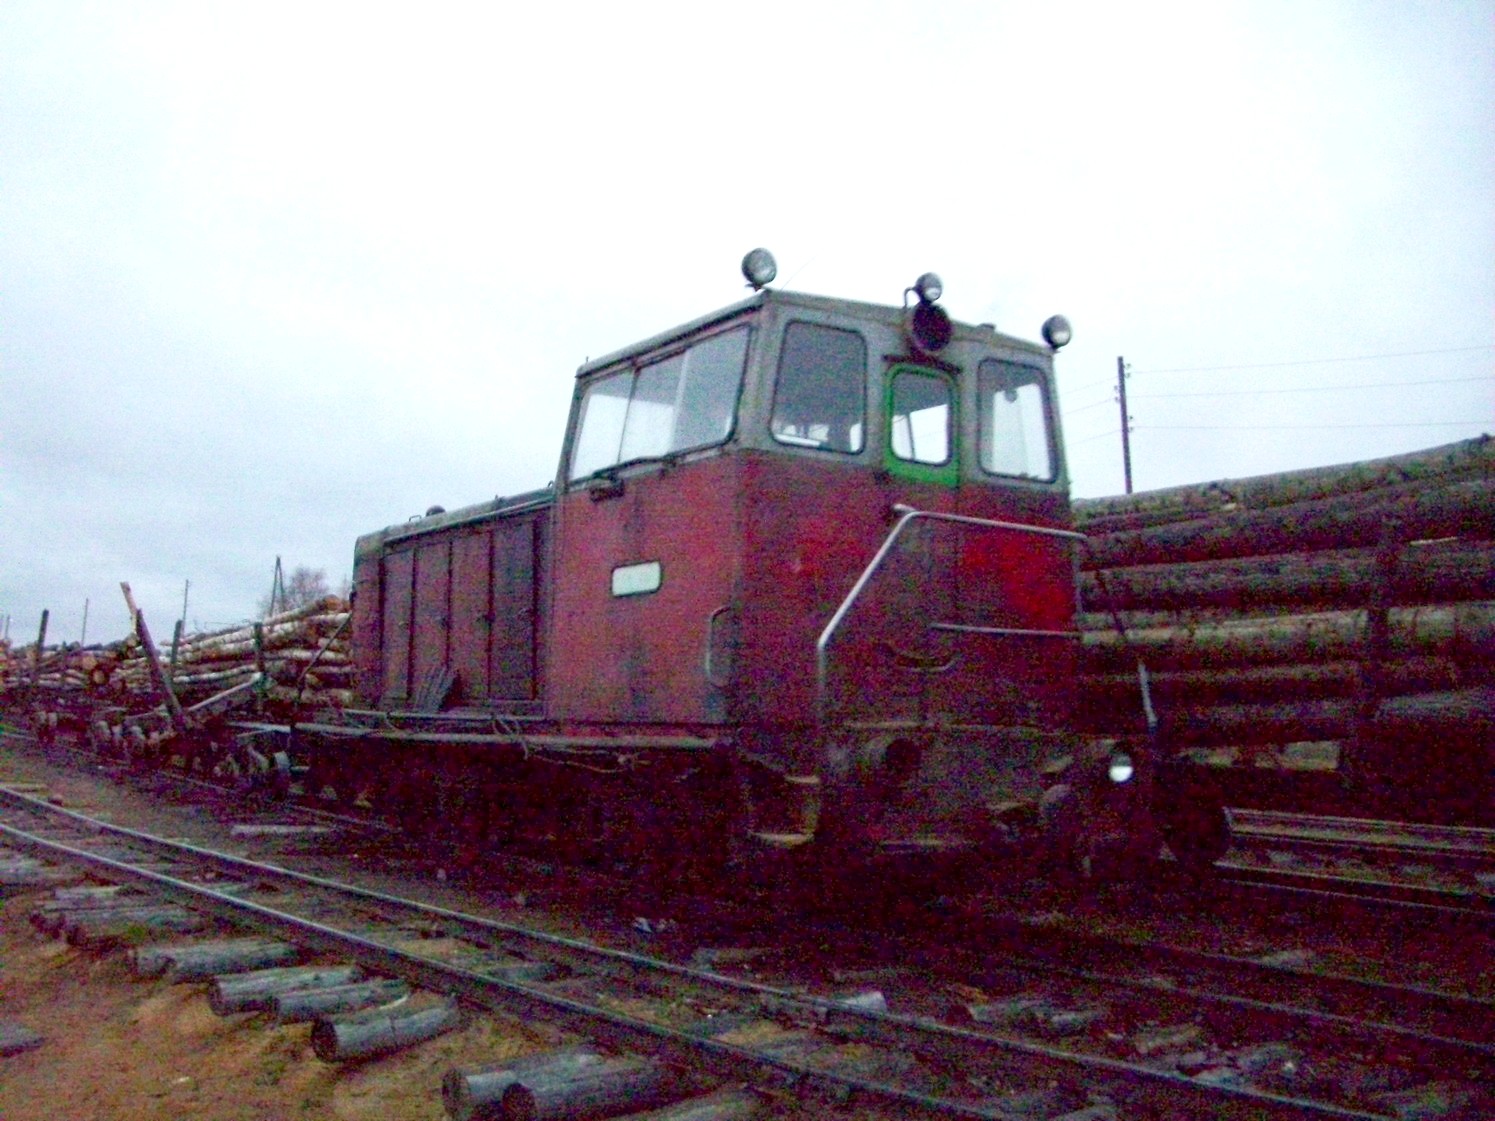 Чепецкая узкоколейная железная дорога  —  фотографии, сделанные в 2009 году (часть 6)